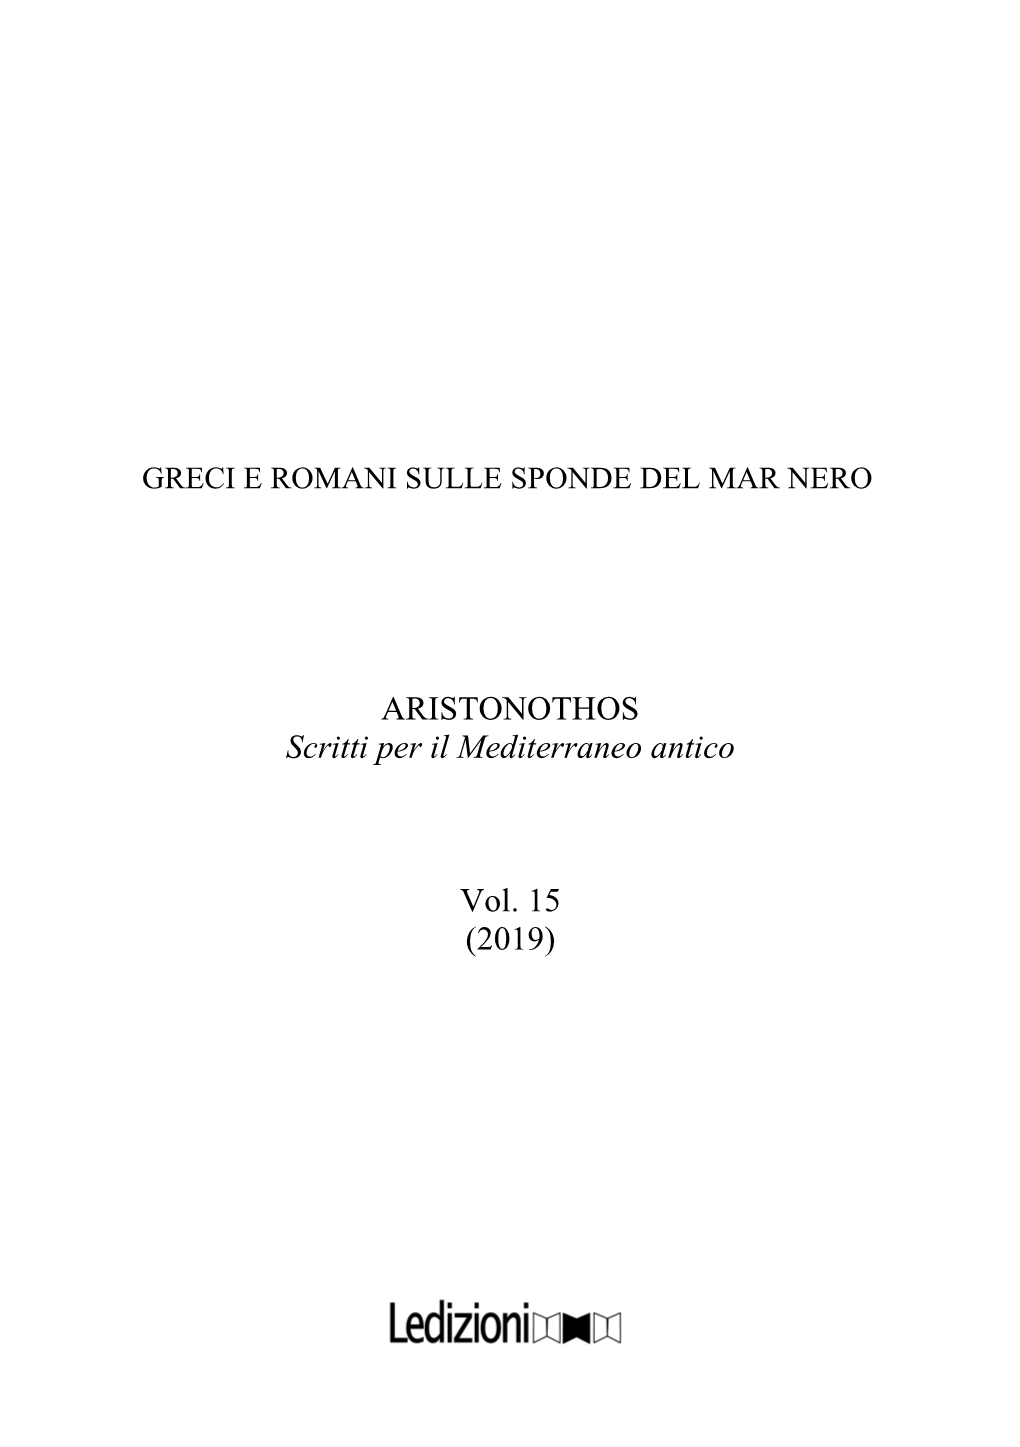 ARISTONOTHOS Scritti Per Il Mediterraneo Antico Vol. 15